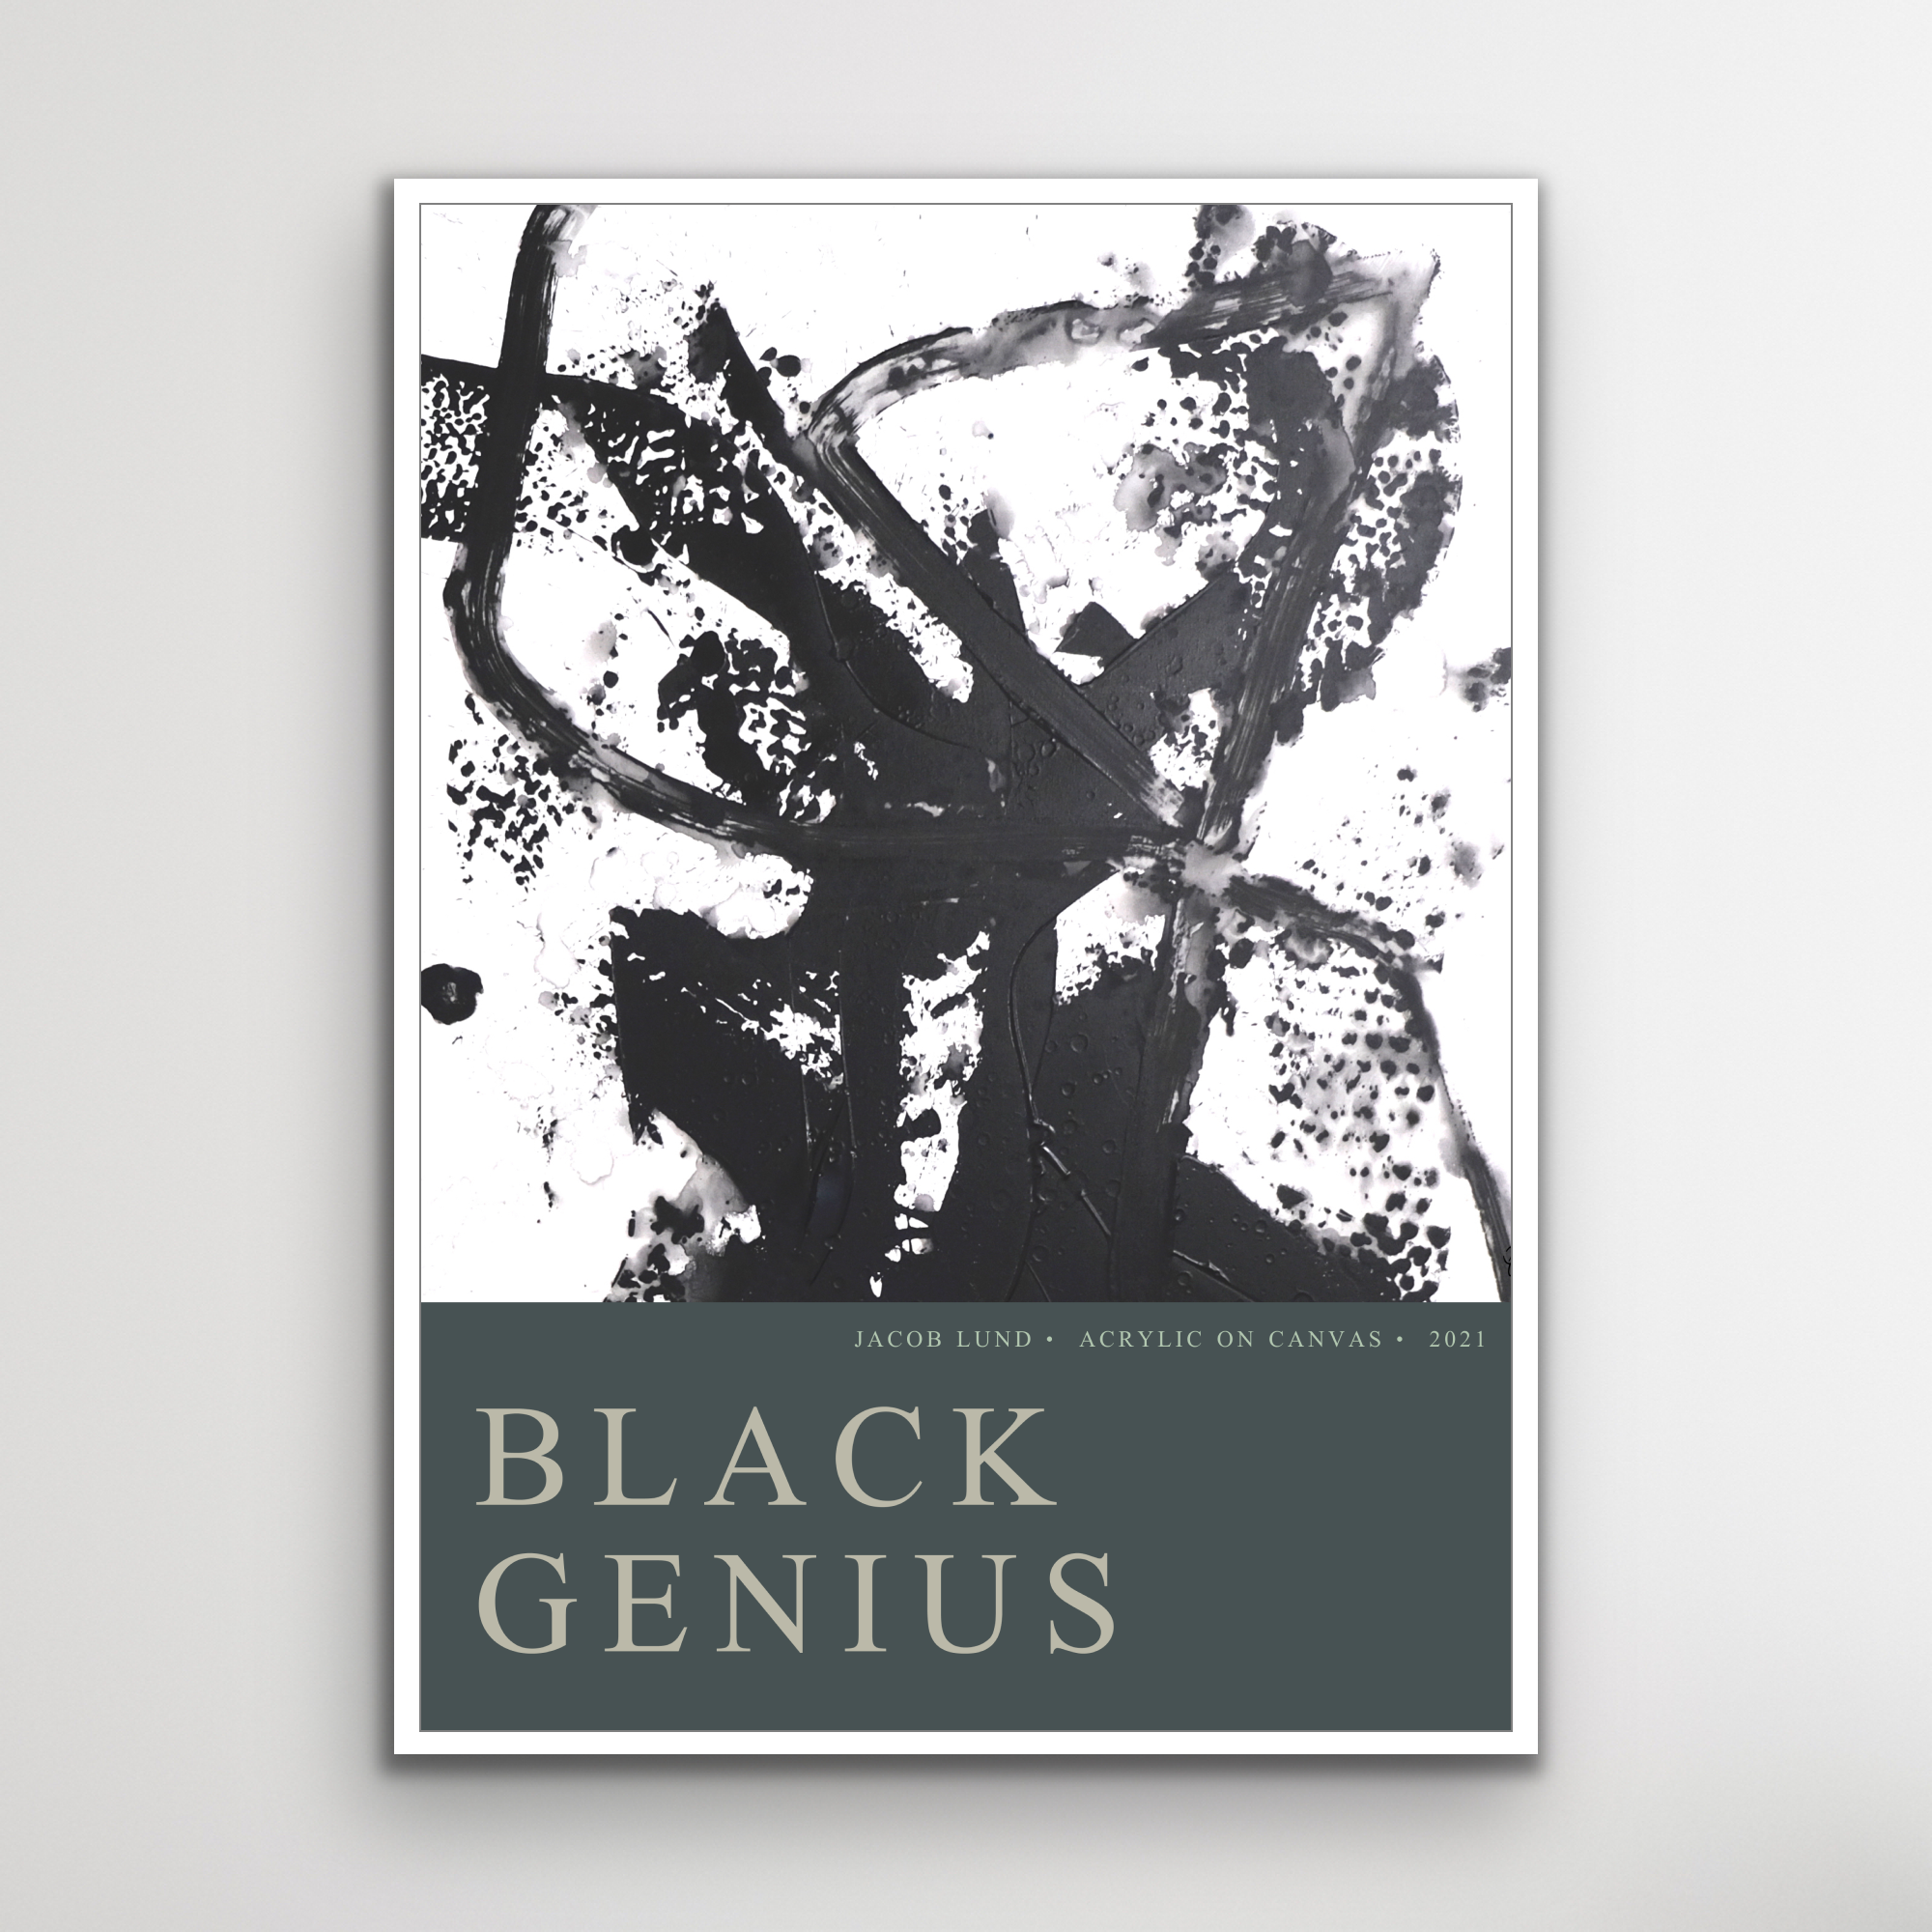 Plakat: "Black Genius"